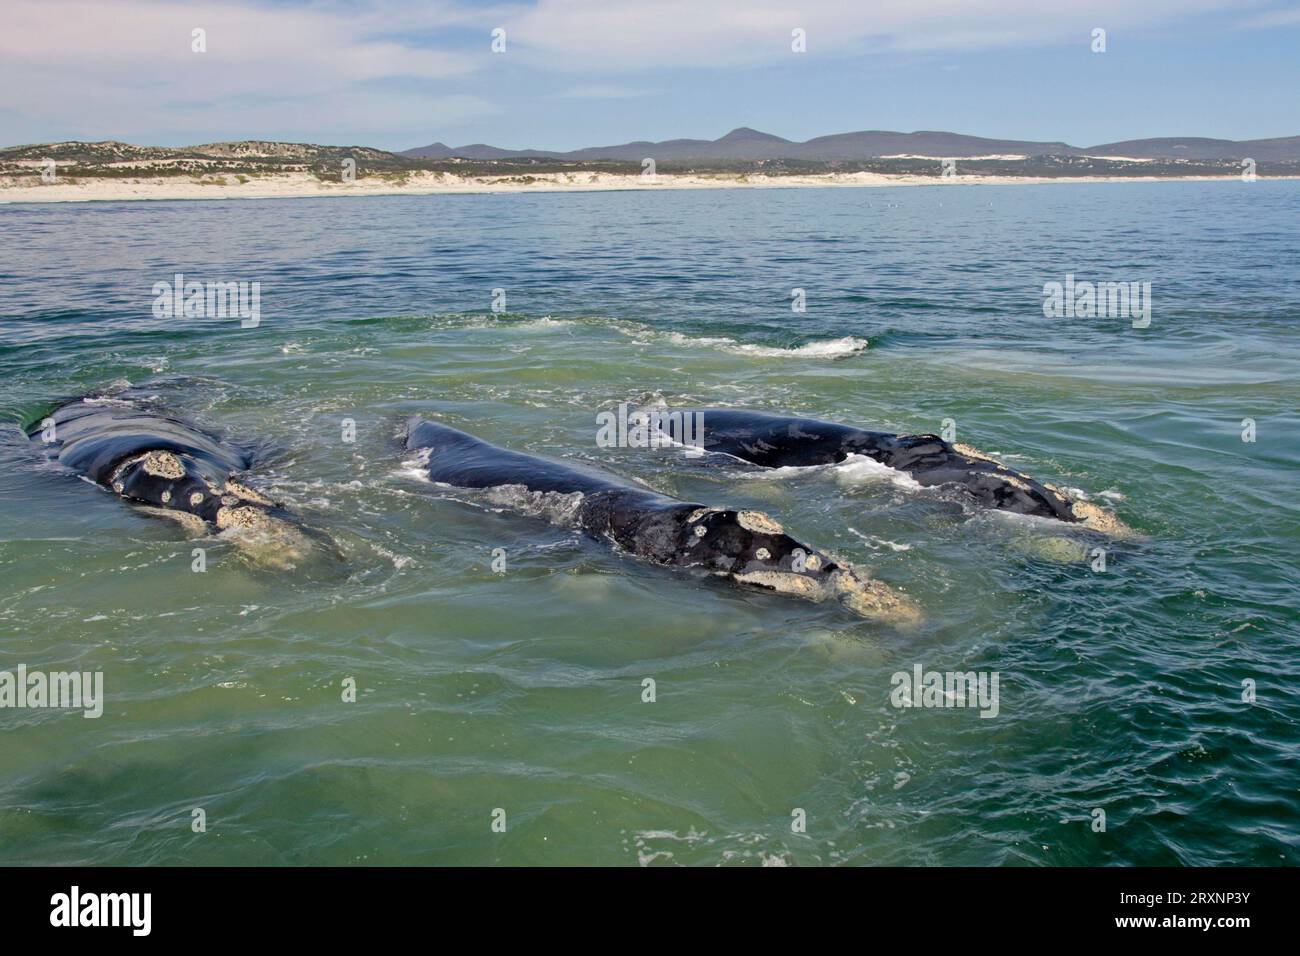 Southern Right Whales (Eubalaena australis), South Africa (Balaena glacialis australis) Stock Photo